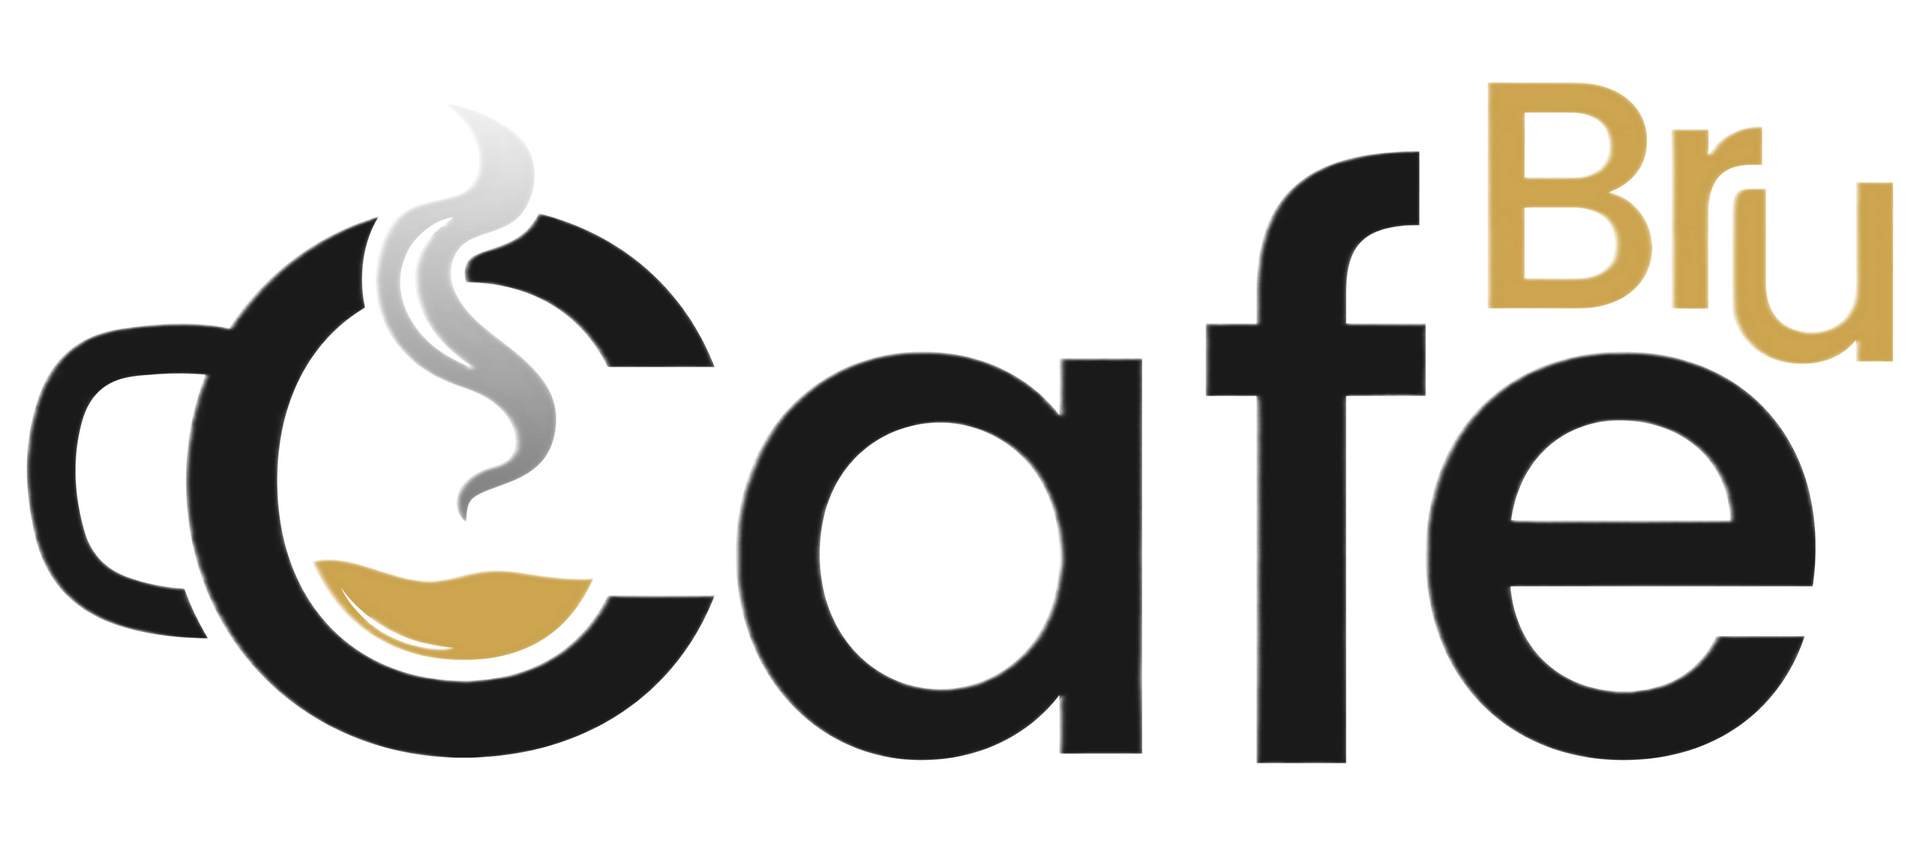 a black and gold logo for cafe bru